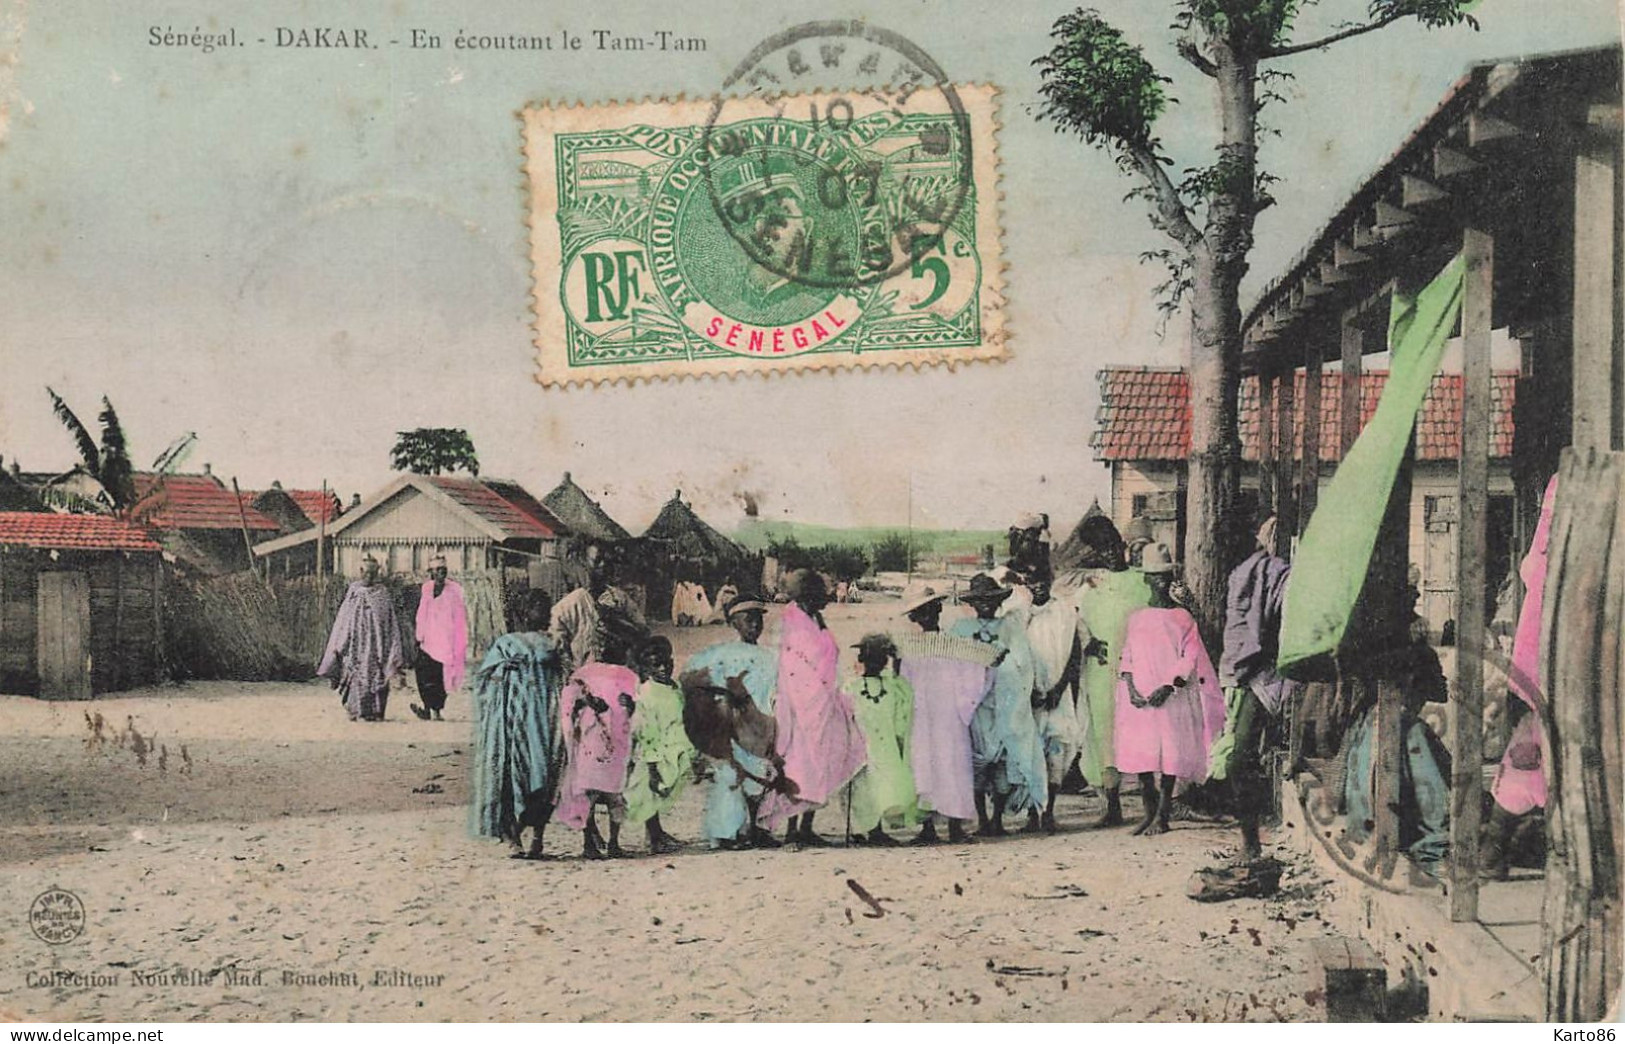 Dakar , Sénégal * 1907 * En écoutant Le Tam Tam * Musique Musiciens * éthnique Ethno Ethnic - Sénégal